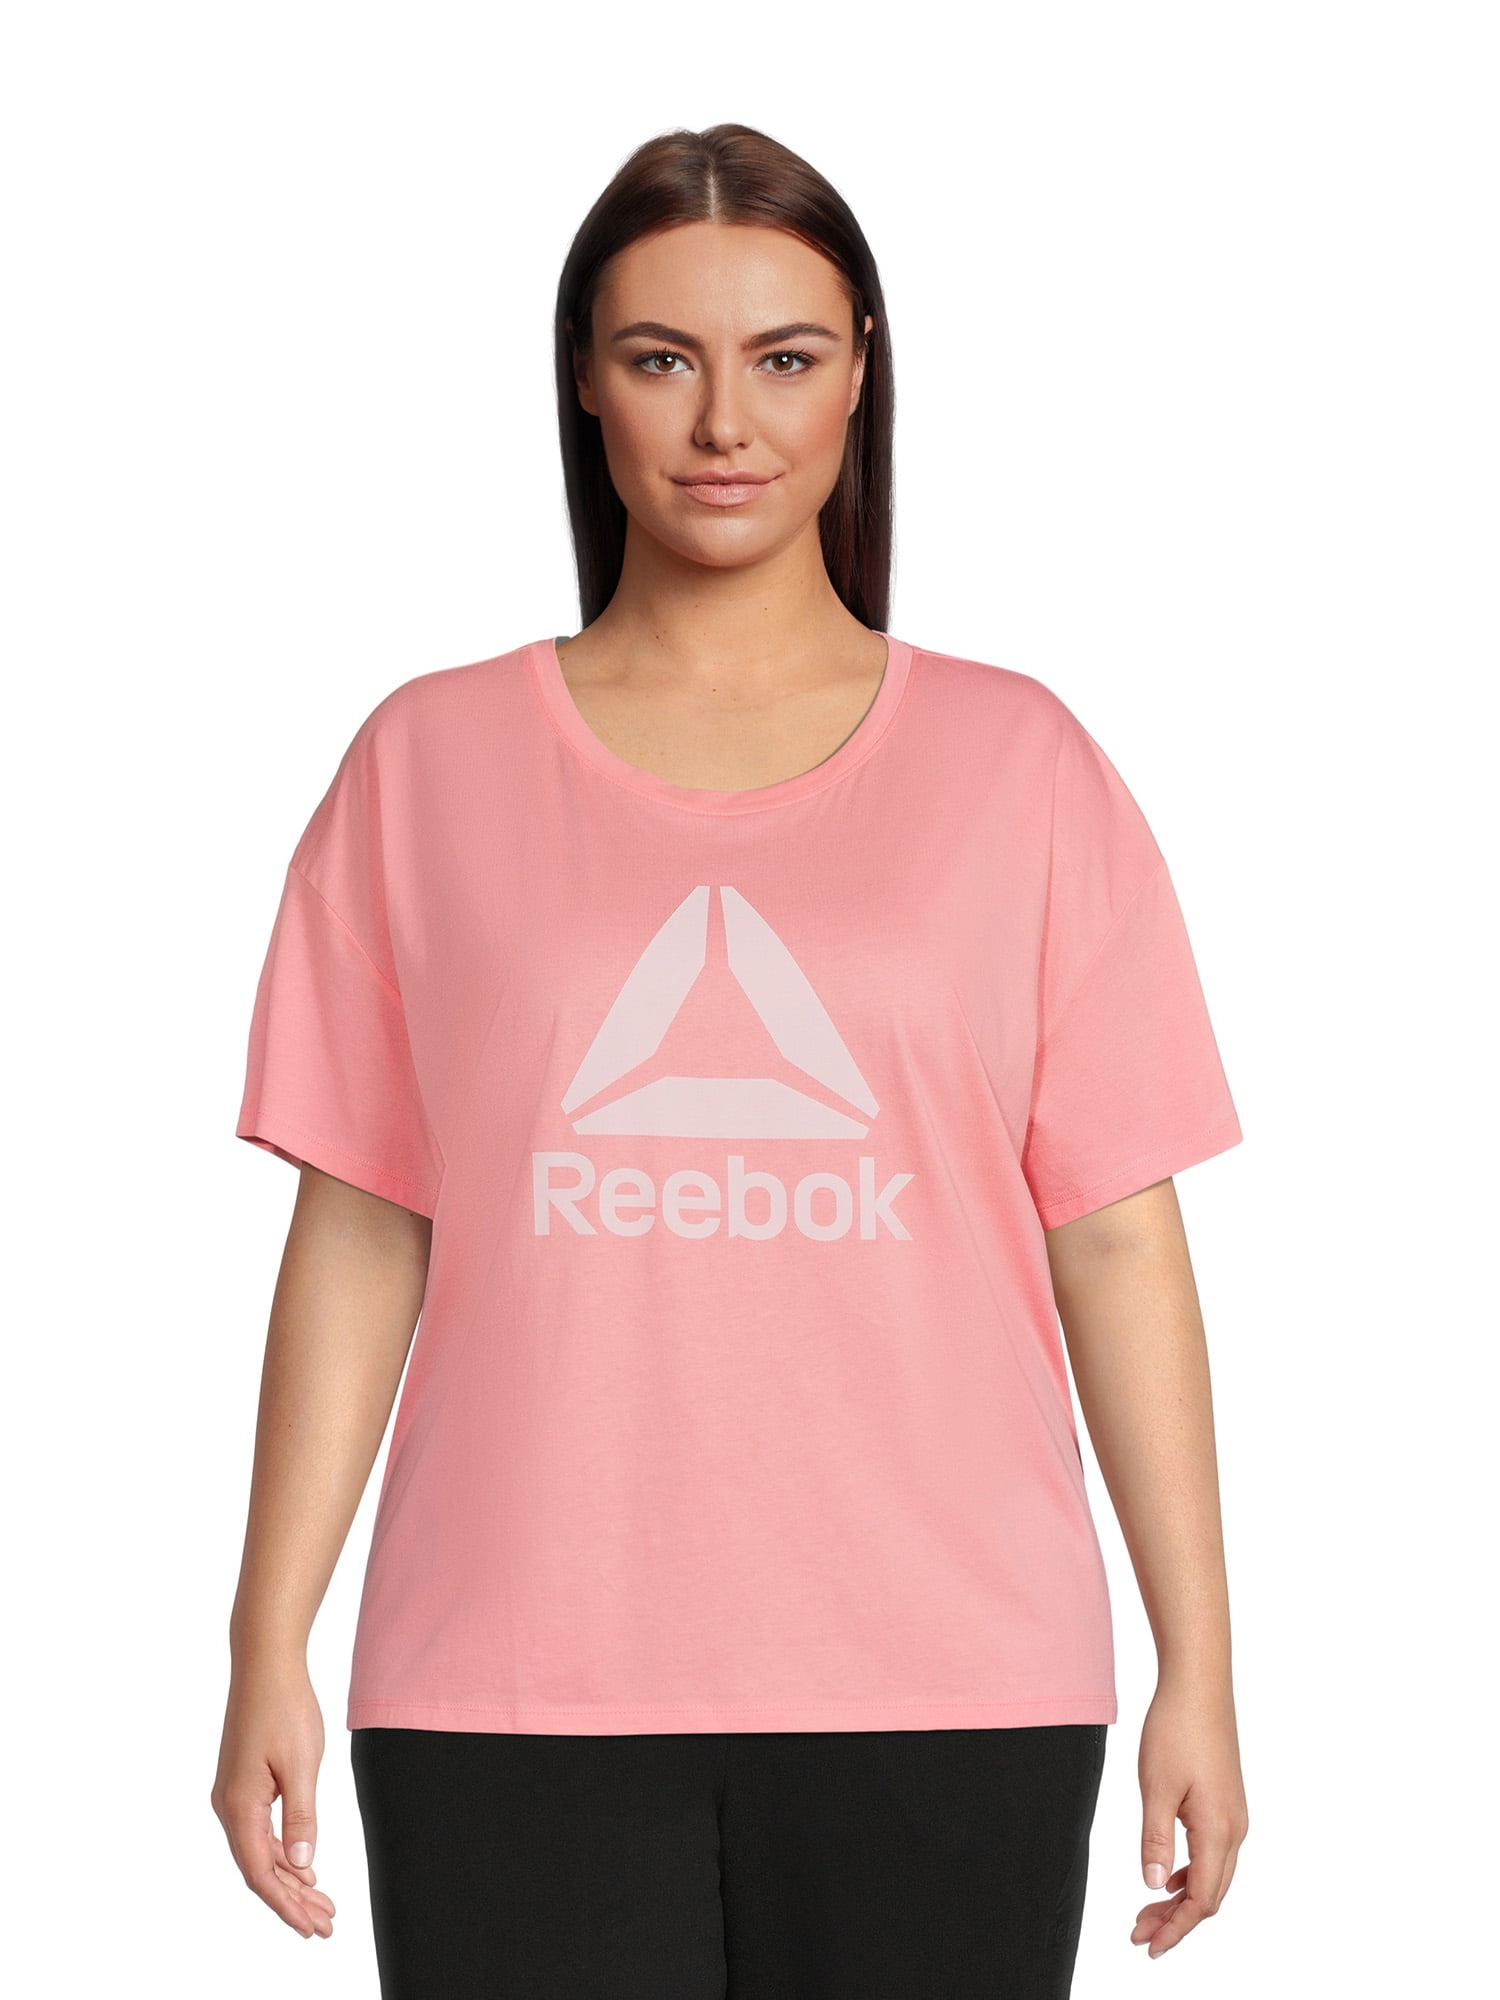 Reebok Women's Plus Size Infinity Short Sleeve Cropped Jersey Tee